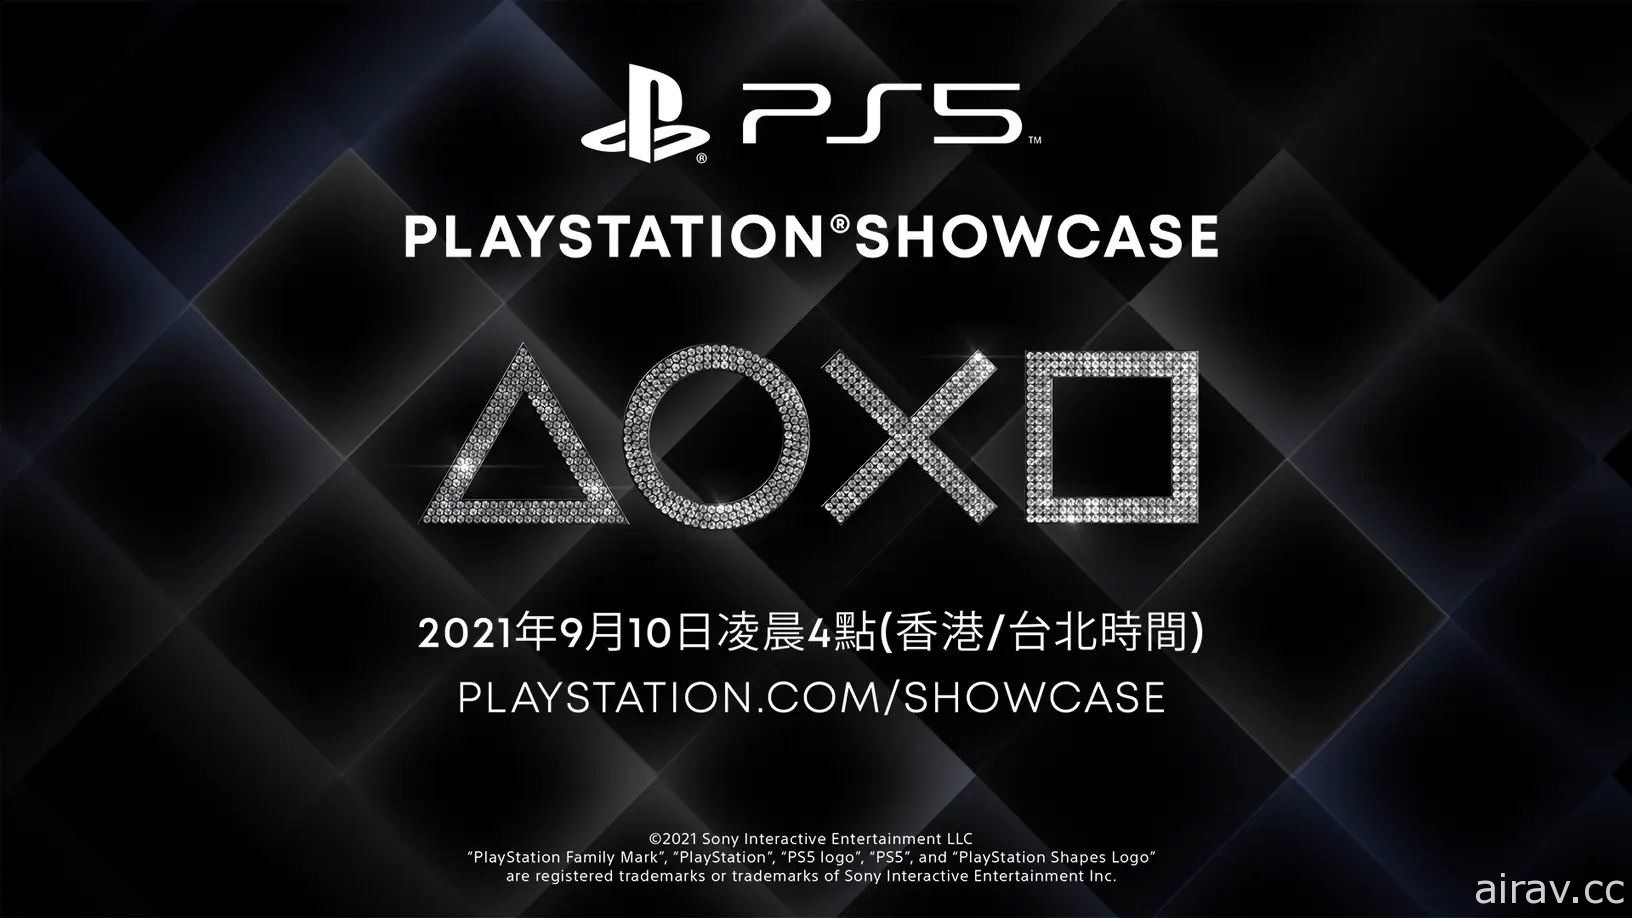 2021 年 PlayStation 發表會 9/10 凌晨登場 將帶來 PS5 新作遊戲陣容消息